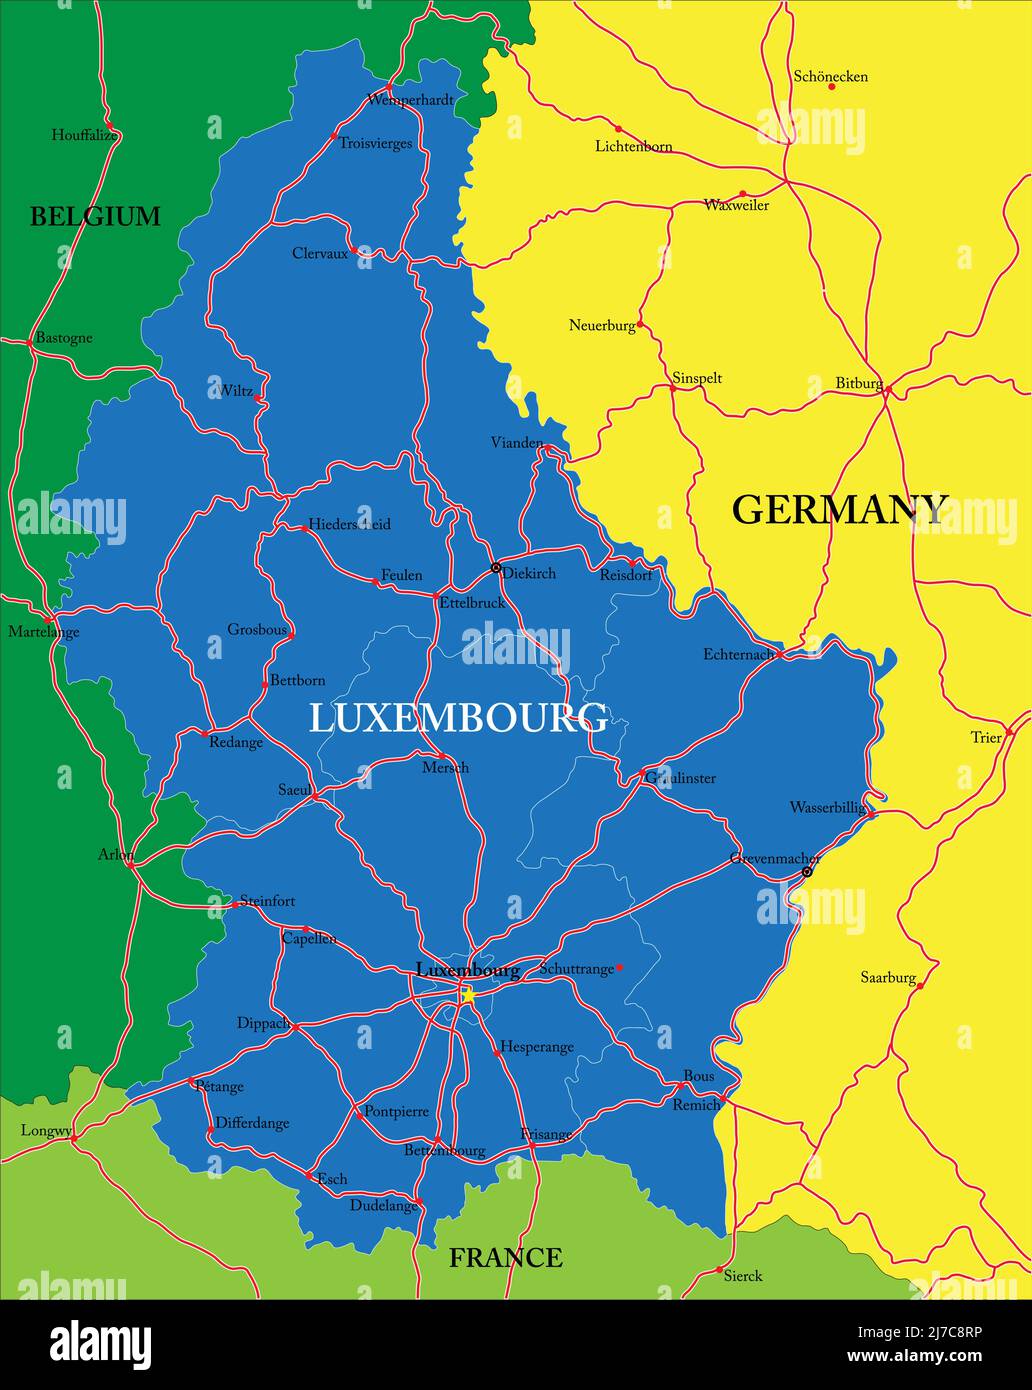 Sehr detaillierte Vektorkarte von Luxemburg mit Verwaltungsregionen, Hauptstädten und Straßen. Stock Vektor